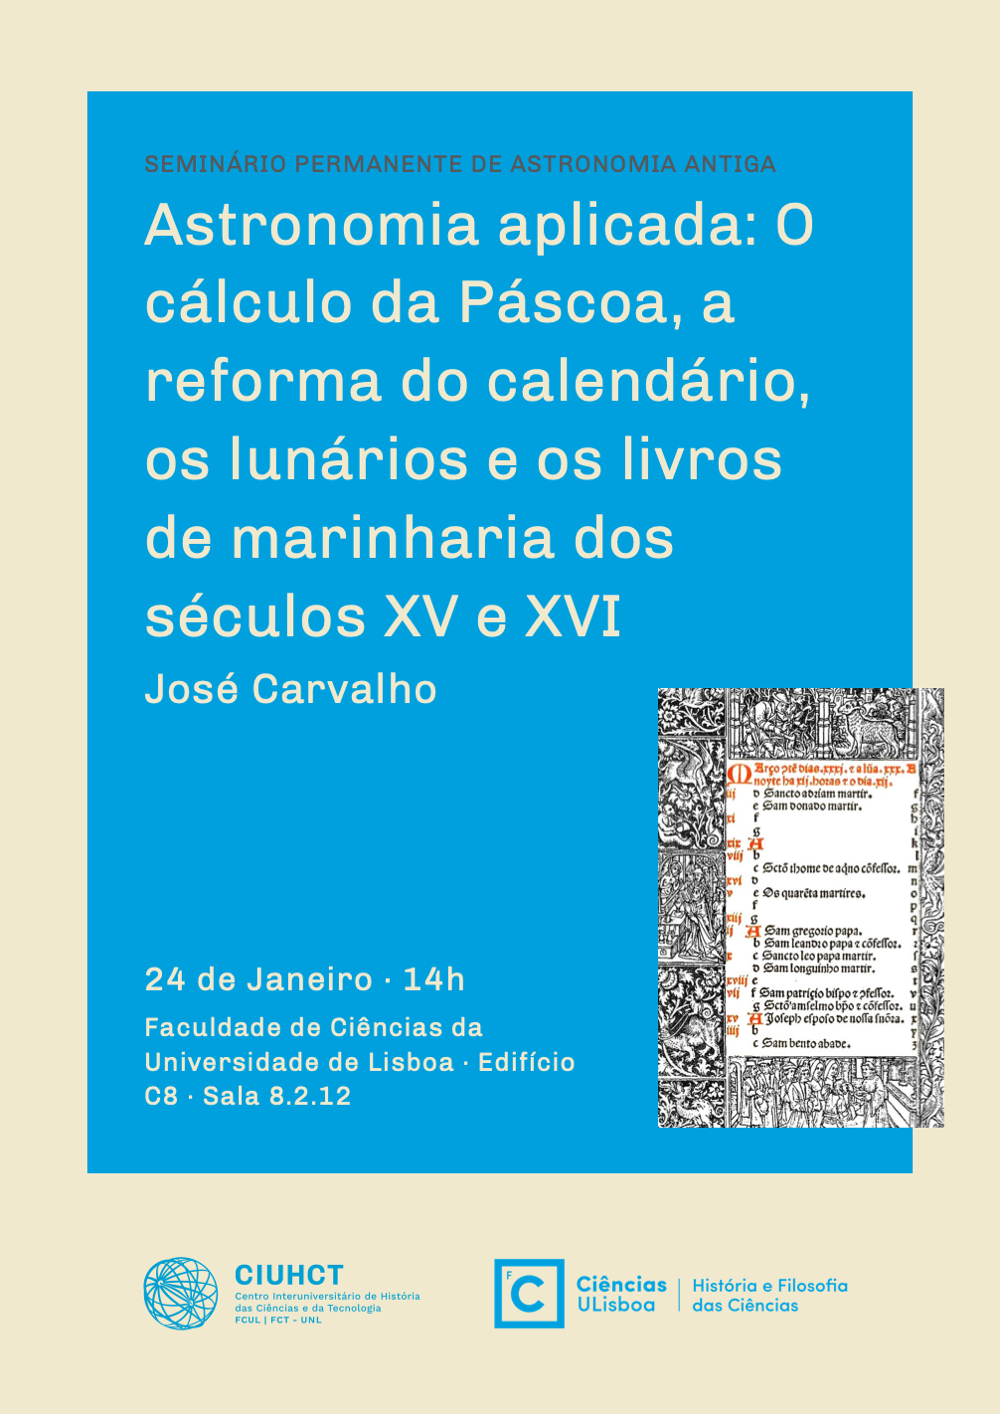 24-01-2019-SPAA-JoseCarvalho.png